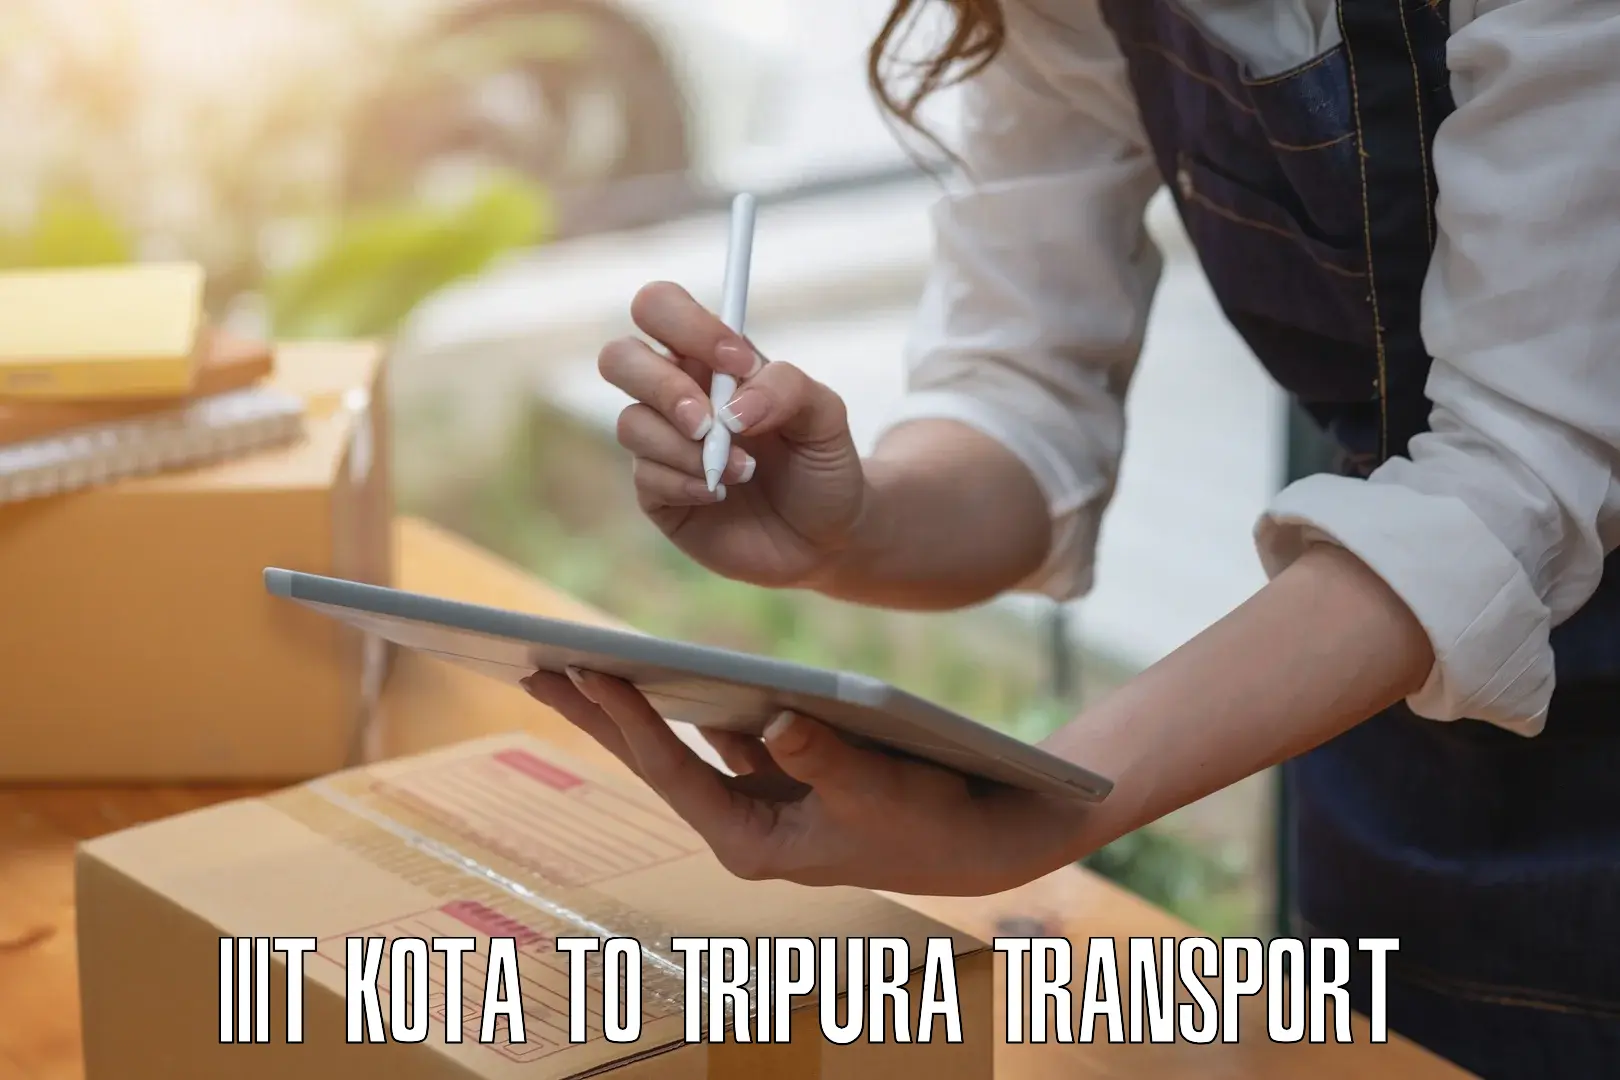 Material transport services IIIT Kota to Manu Bazar